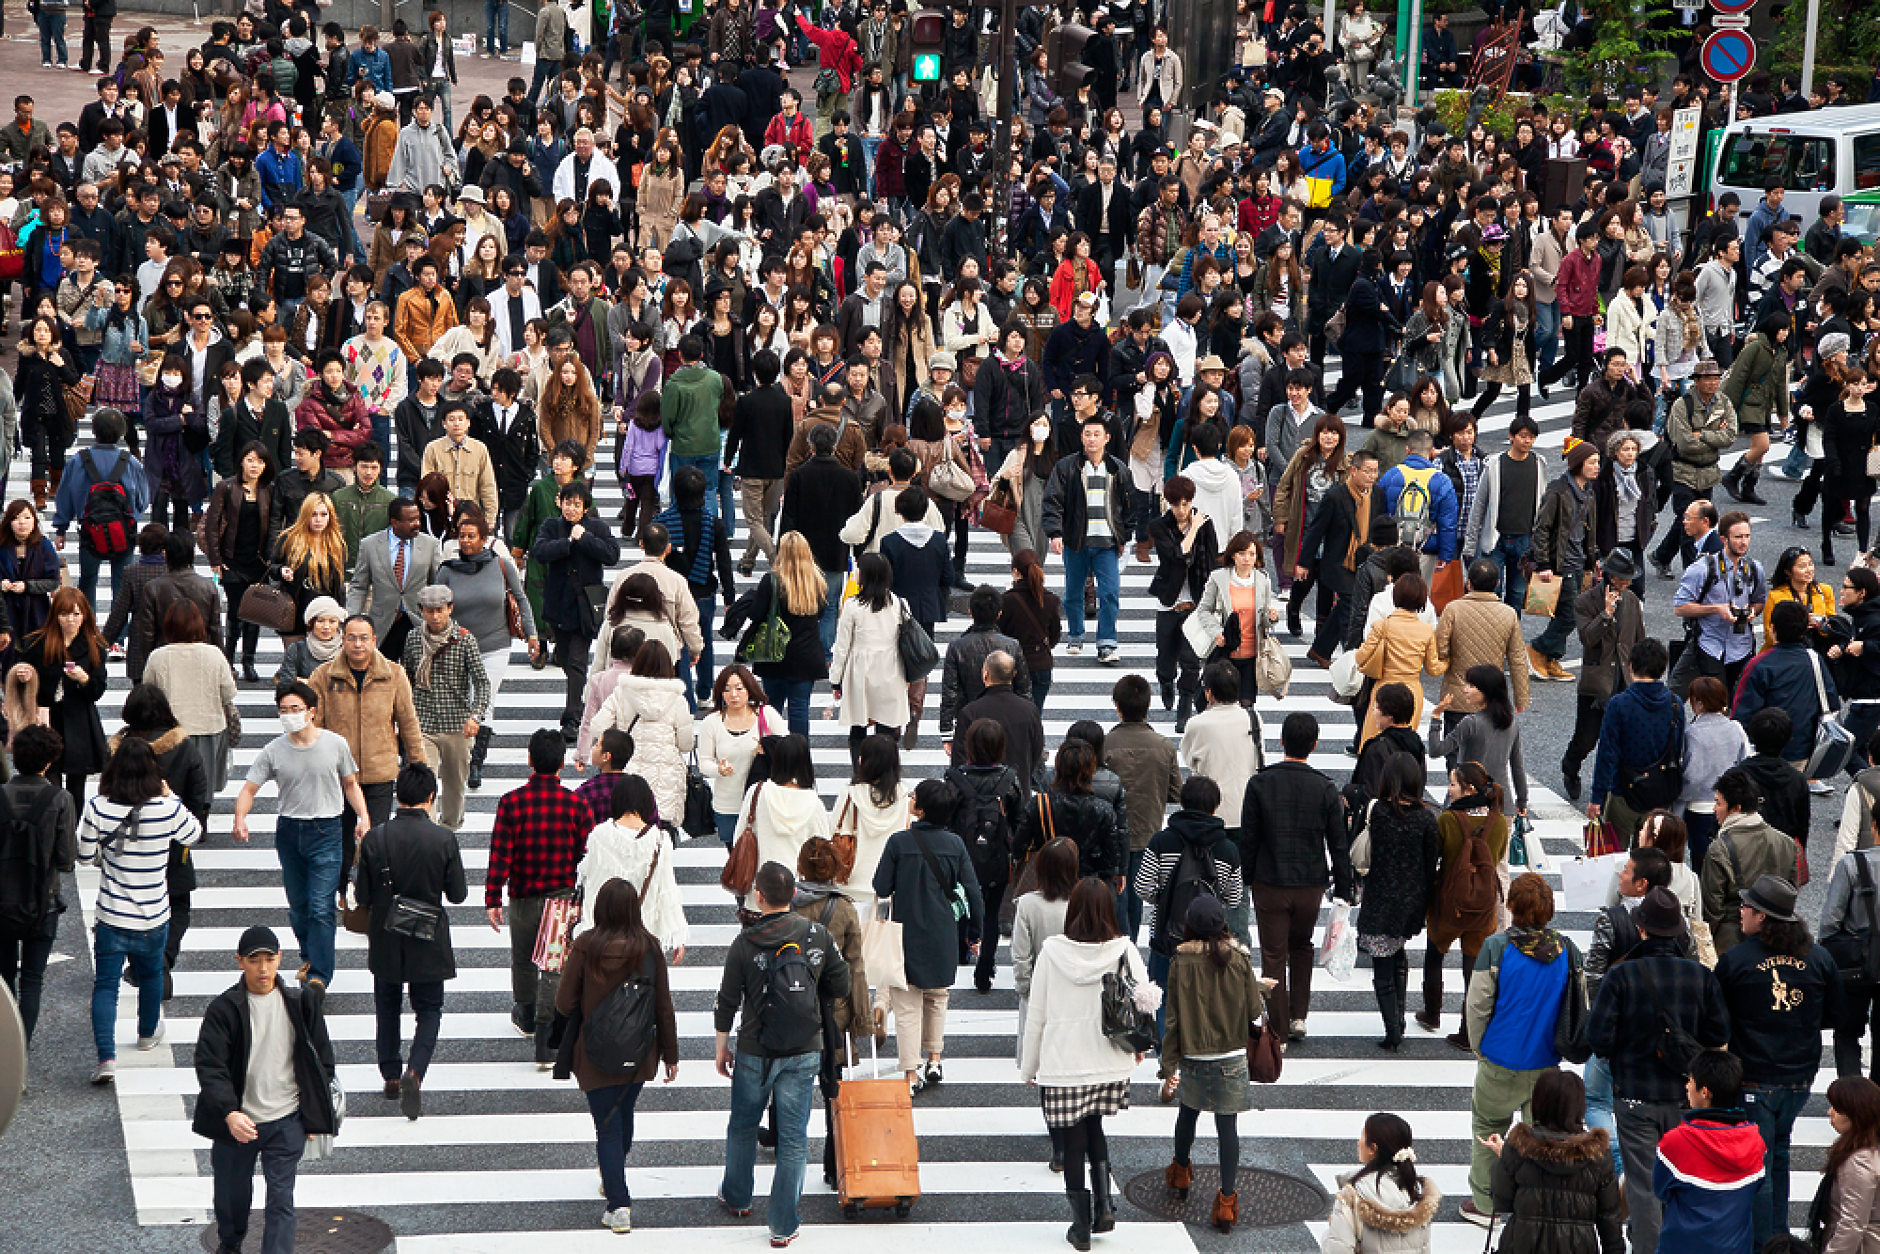 Населението на Япония се топи с рекордни темпове и спадна под 125 милиона души